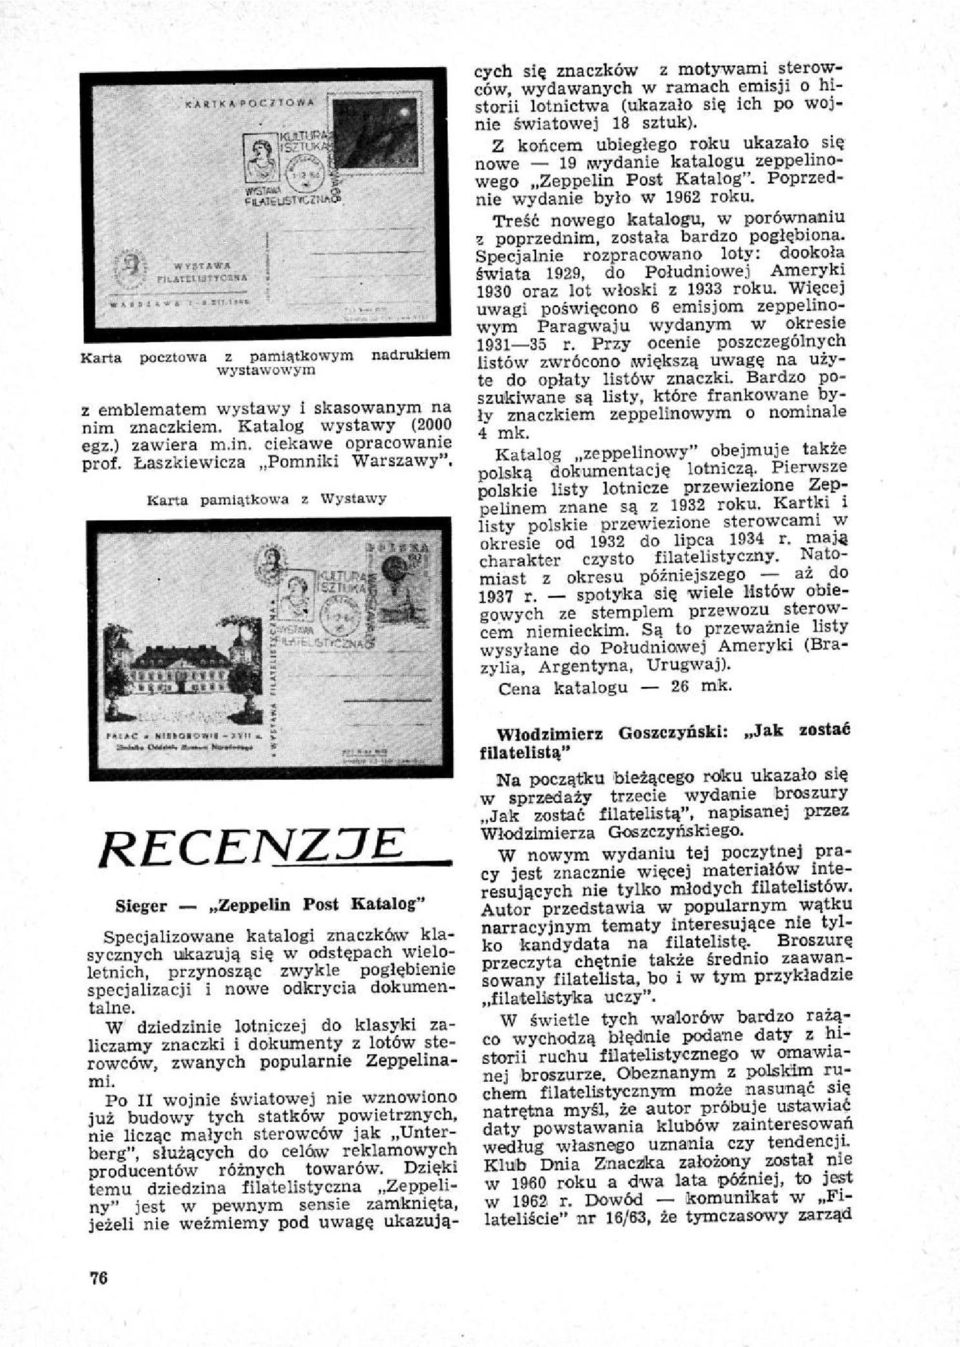 Karta pamiątkowa z Wystawy RECENZJE Sleger Zeppelin Post Katalog" Specjalizowane katalogi znaczków klasycznych ukazują się w odstępach wieloletnich, przynosząc zwykle pogłębienie specjalizacji i nowe